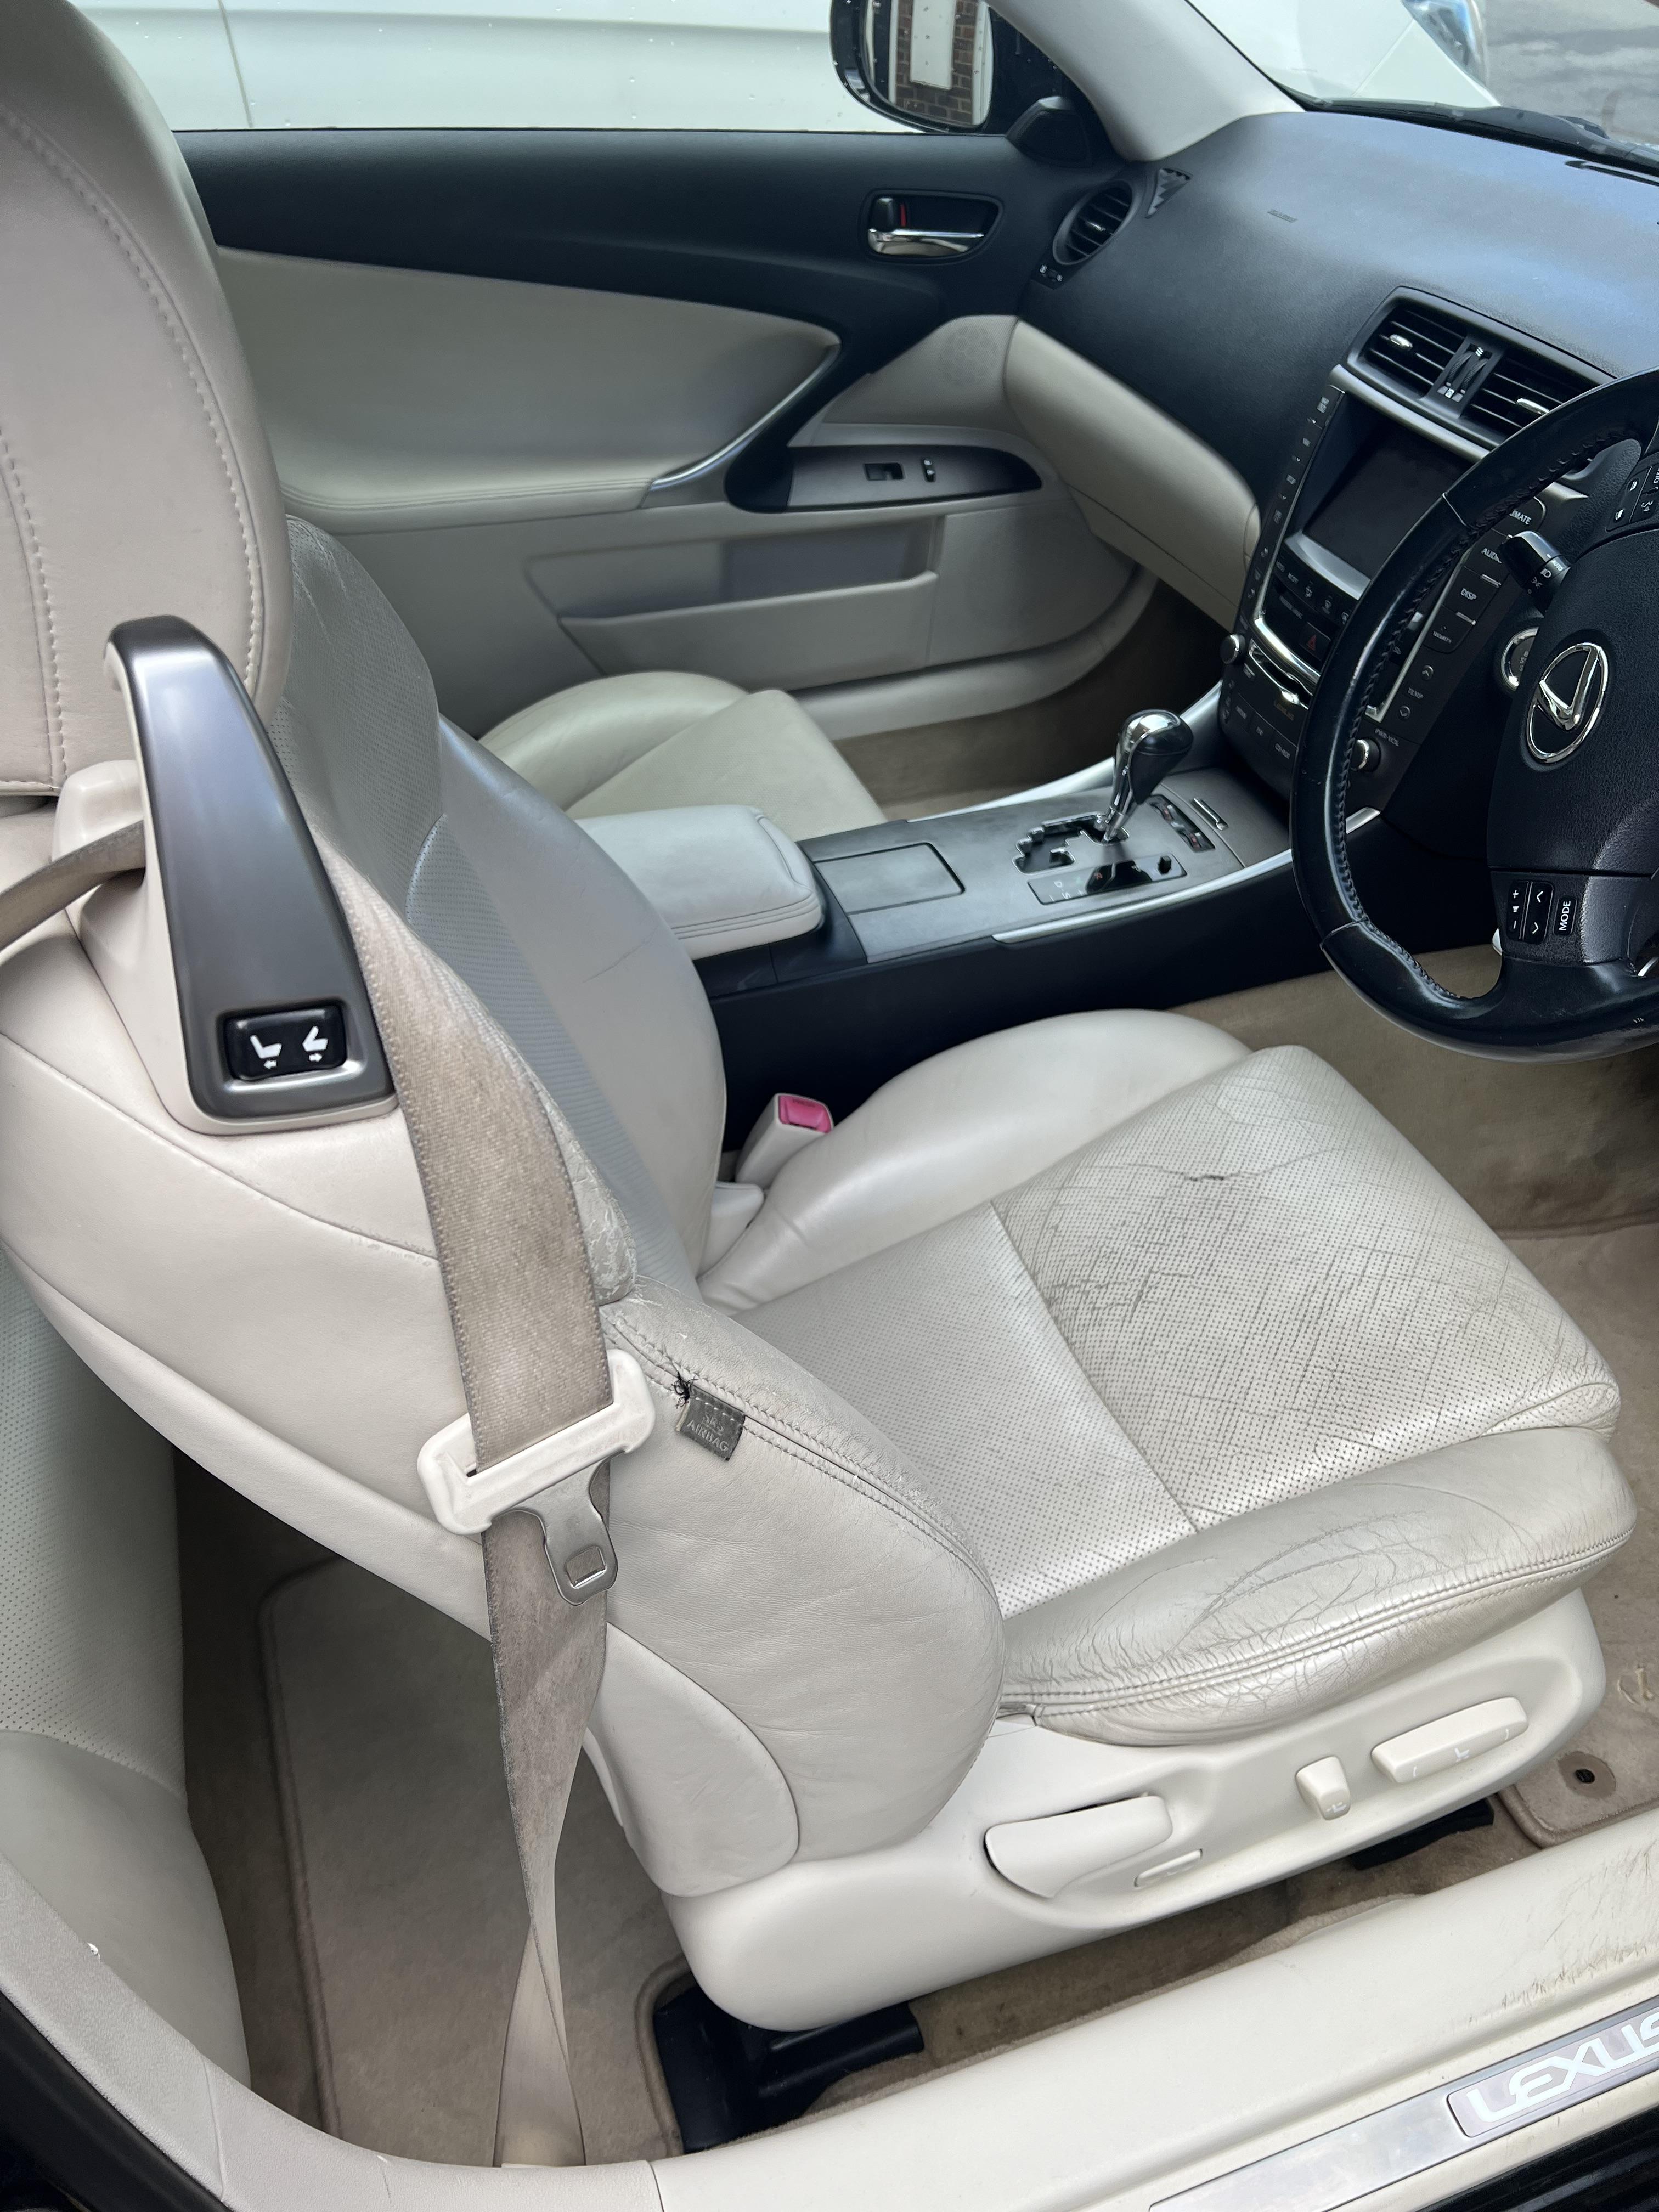 Perforated leather seat cover repair - ClubLexus - Lexus Forum